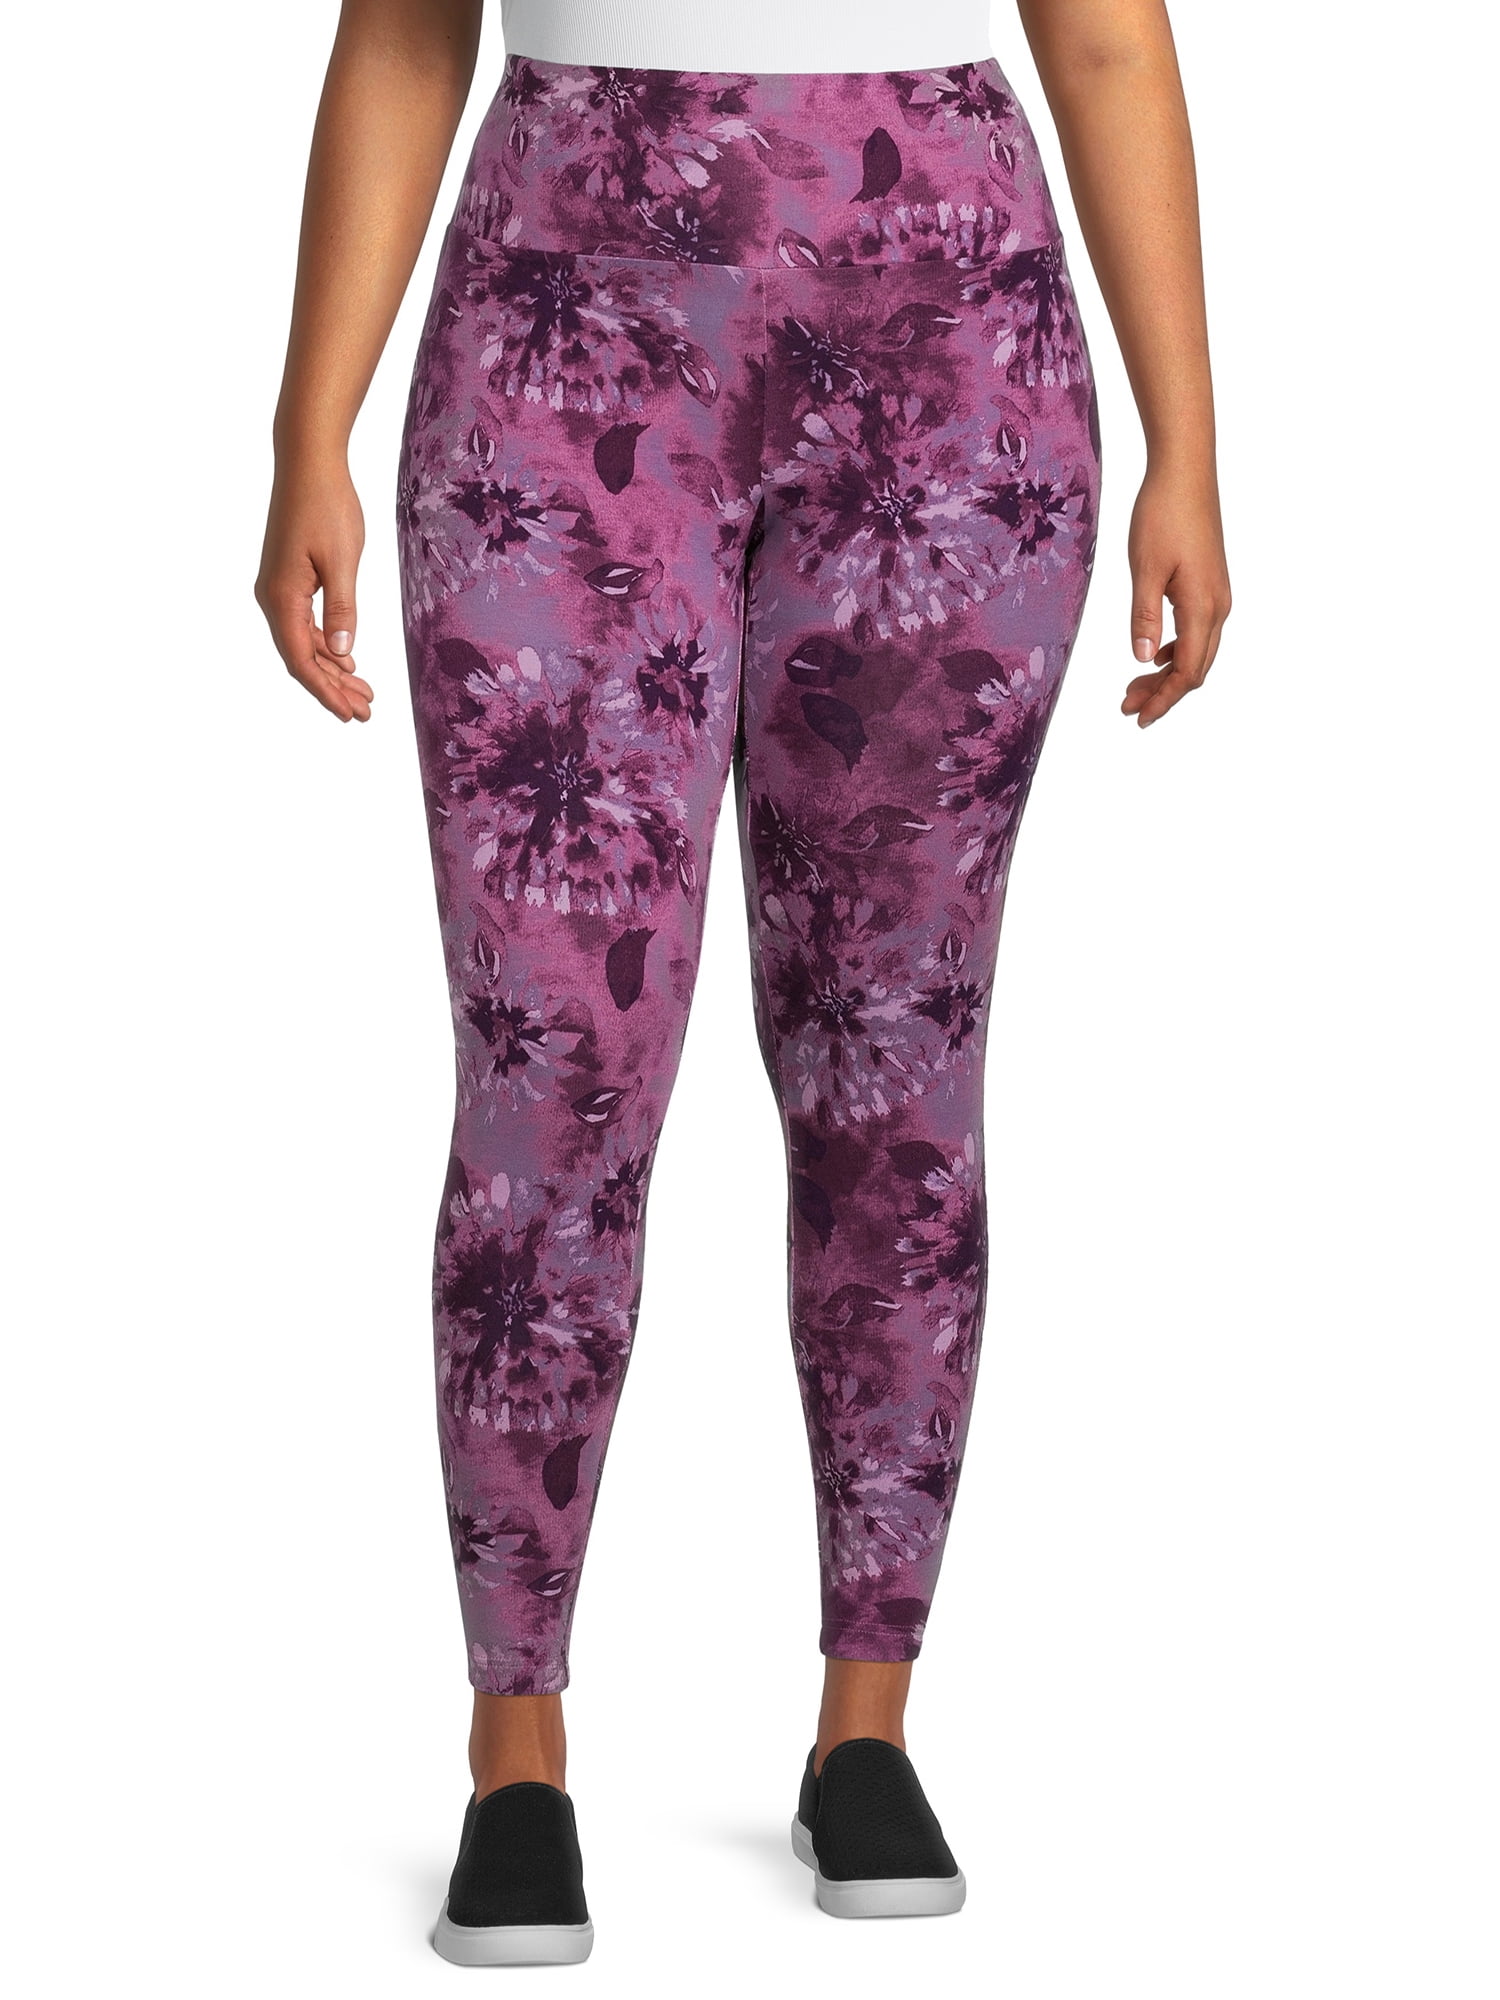 NEW Terra & Sky Women's Plus Size Purple Jeggings Pants Size 4X (28W-30W)  NWT